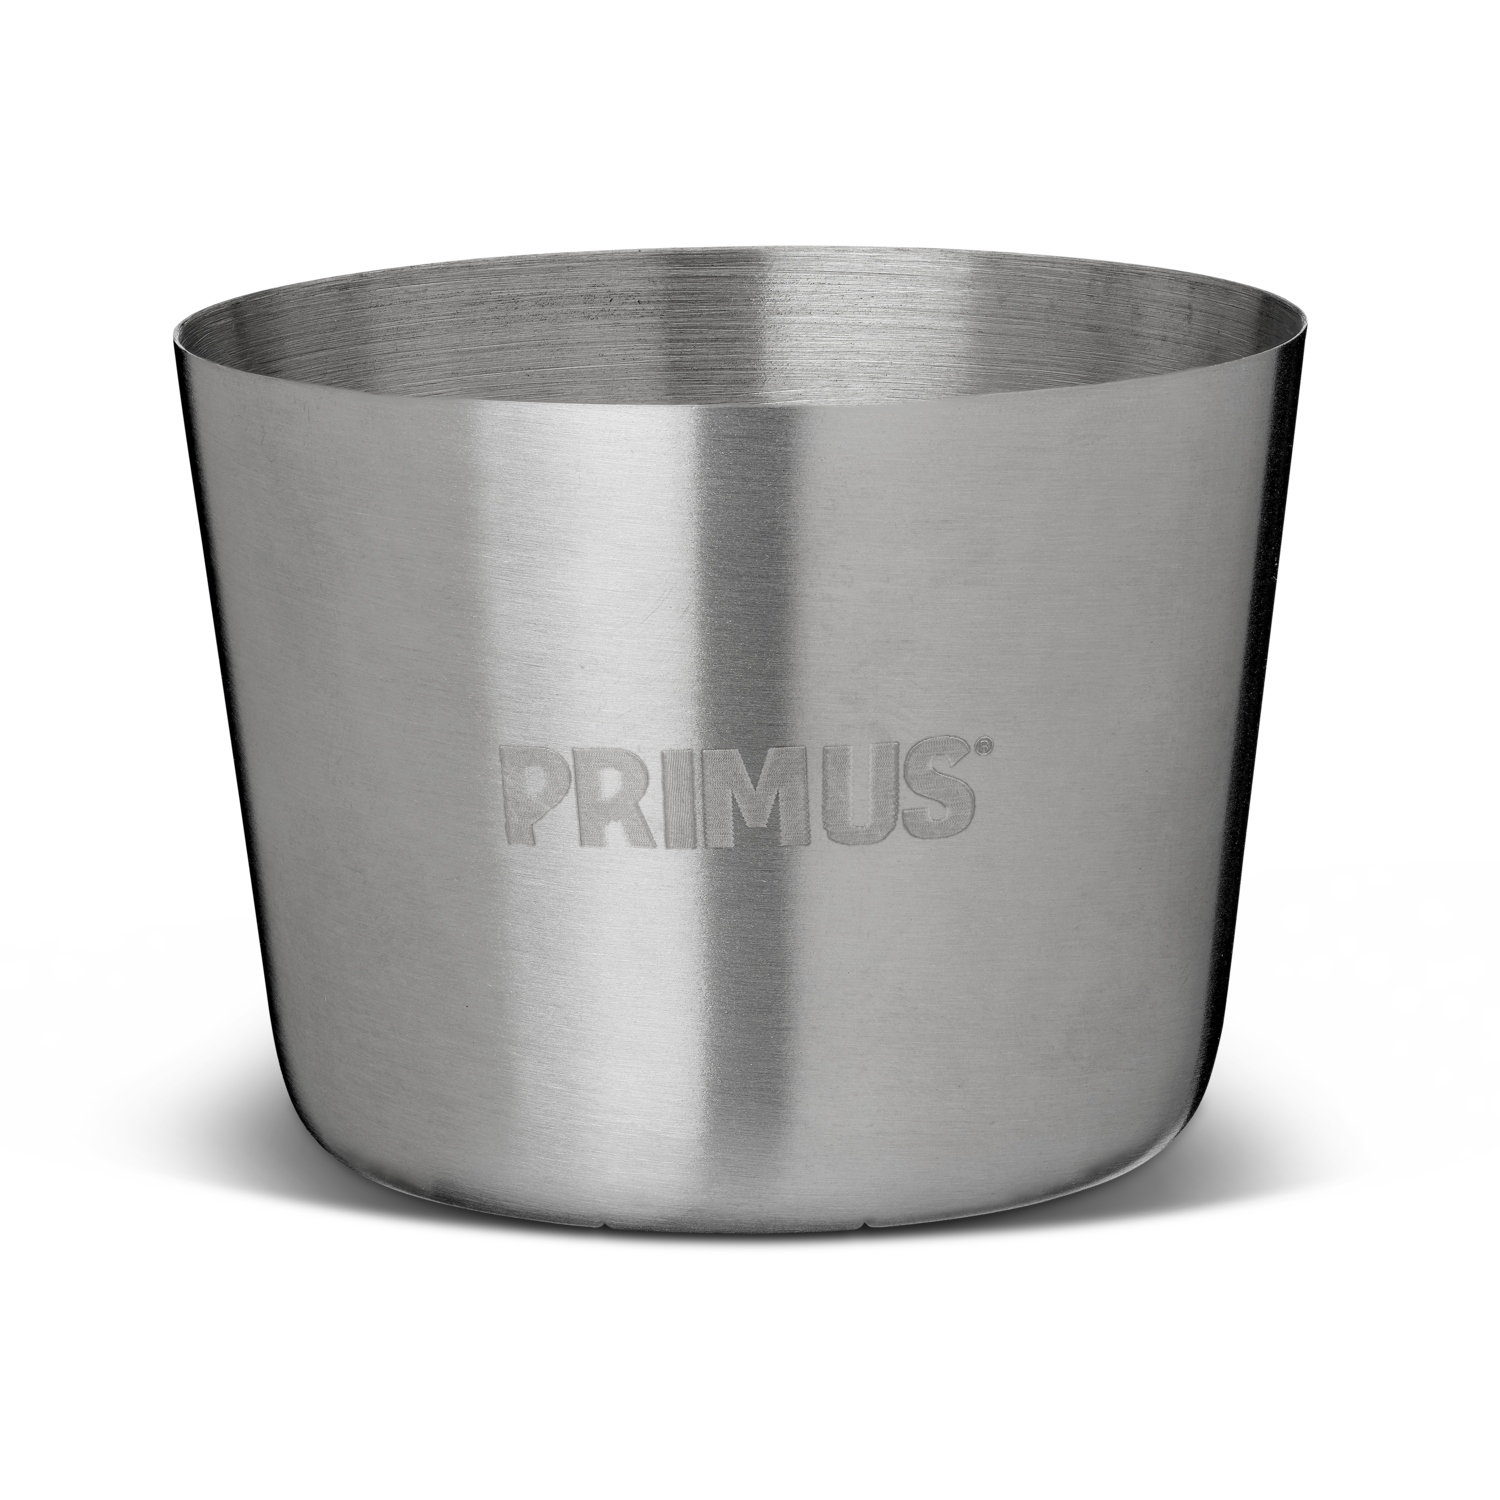 Produktbild von Primus Shot Glass Trinkbecher (4-er Pack) - 100ml